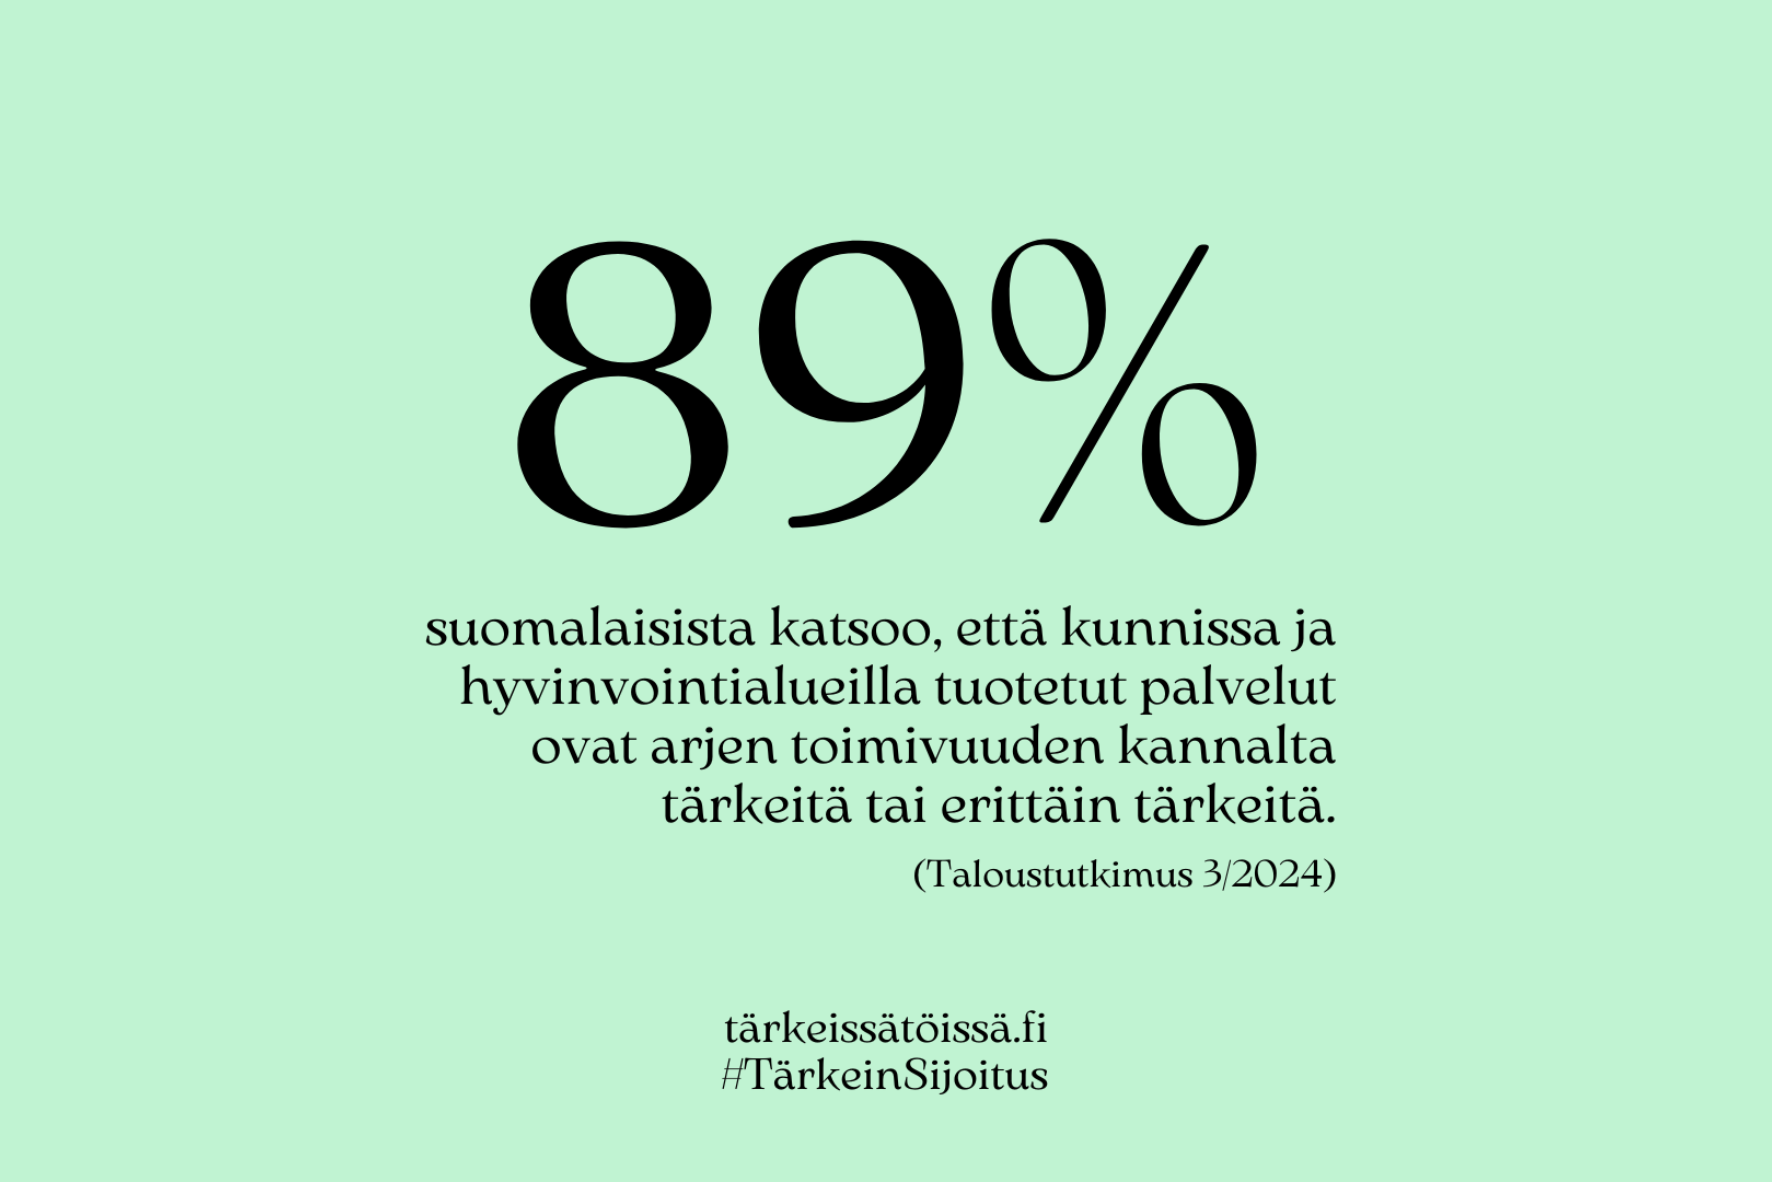 Tärkein sijoitus -kampanjakuva 89 prosenttia suomalaisista 